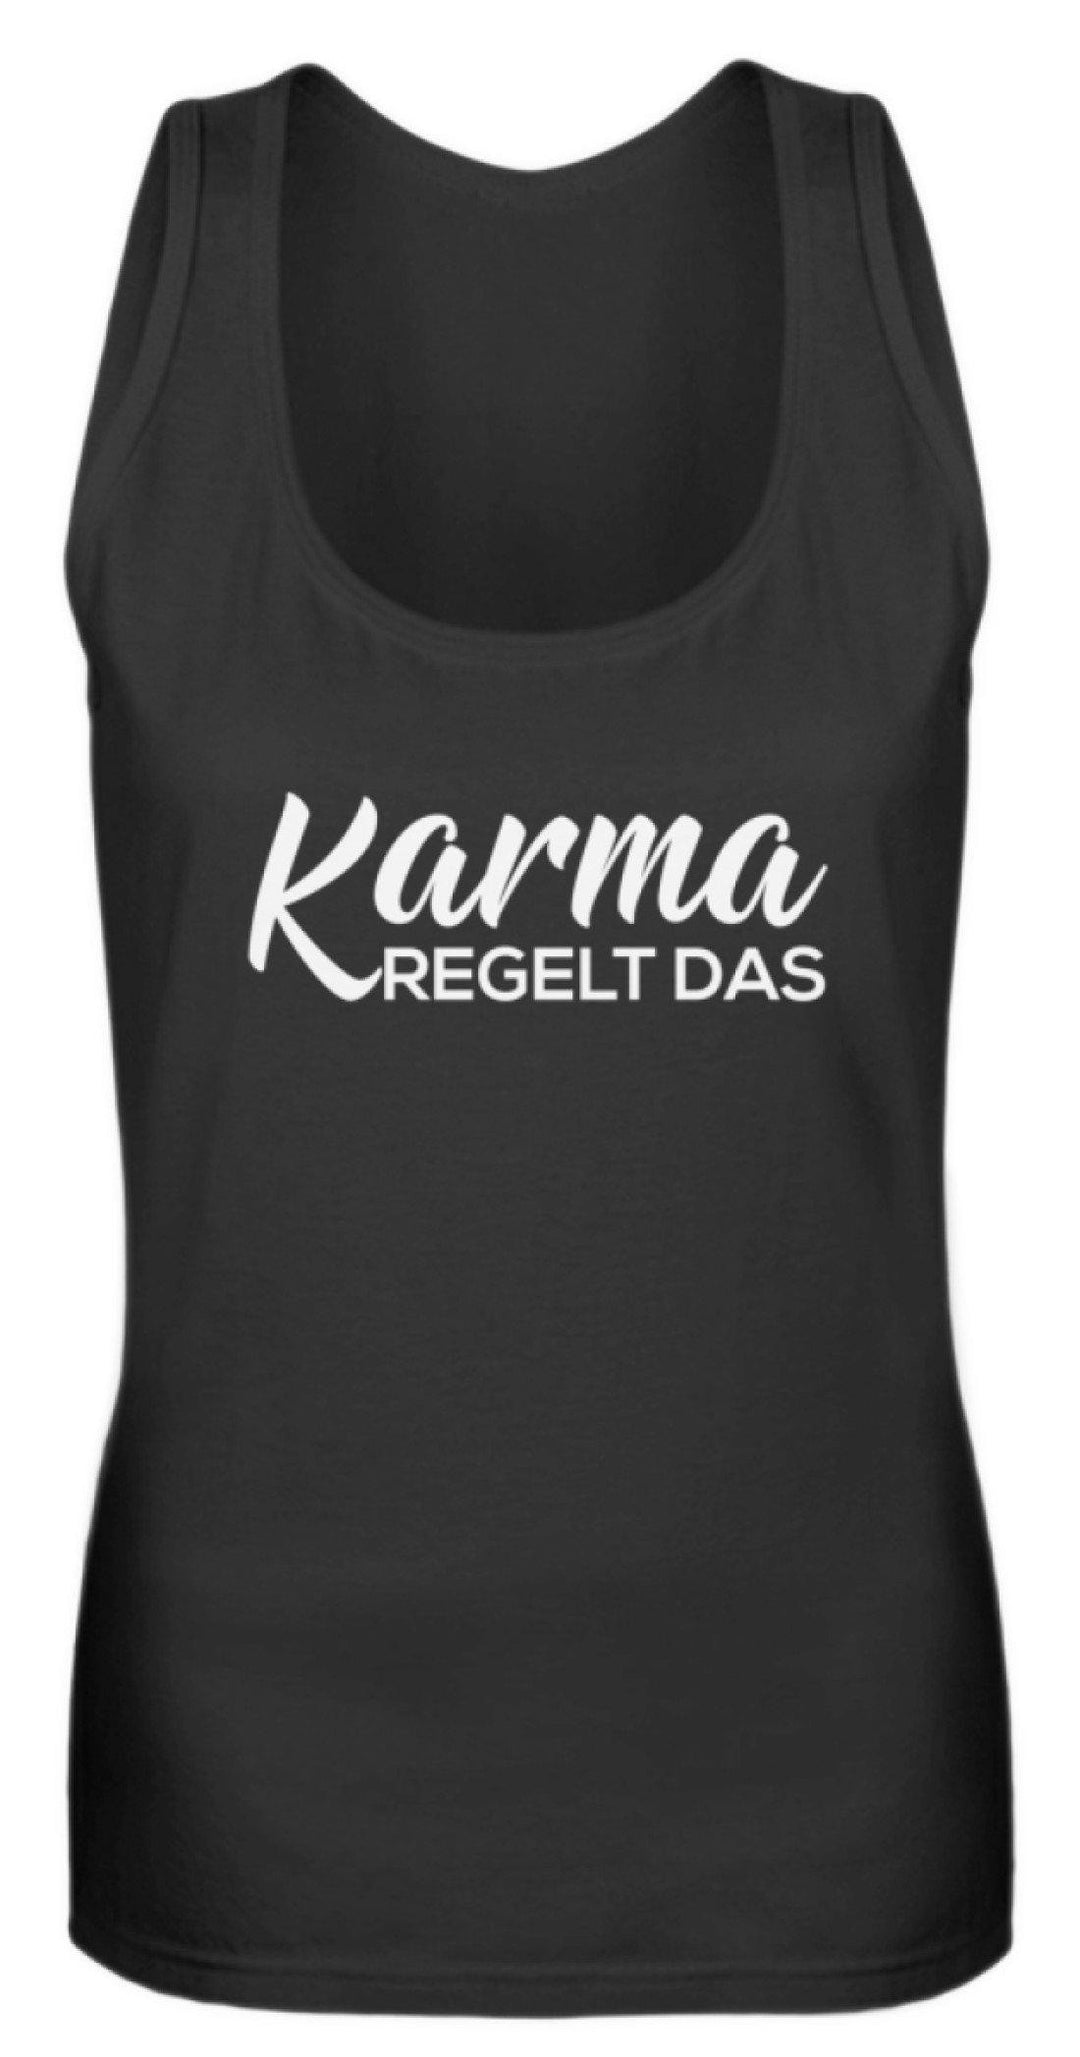 Karma regelt das - Words on Shirts  - Frauen Tanktop - Words on Shirts Sag es mit dem Mittelfinger Shirts Hoodies Sweatshirt Taschen Gymsack Spruch Sprüche Statement